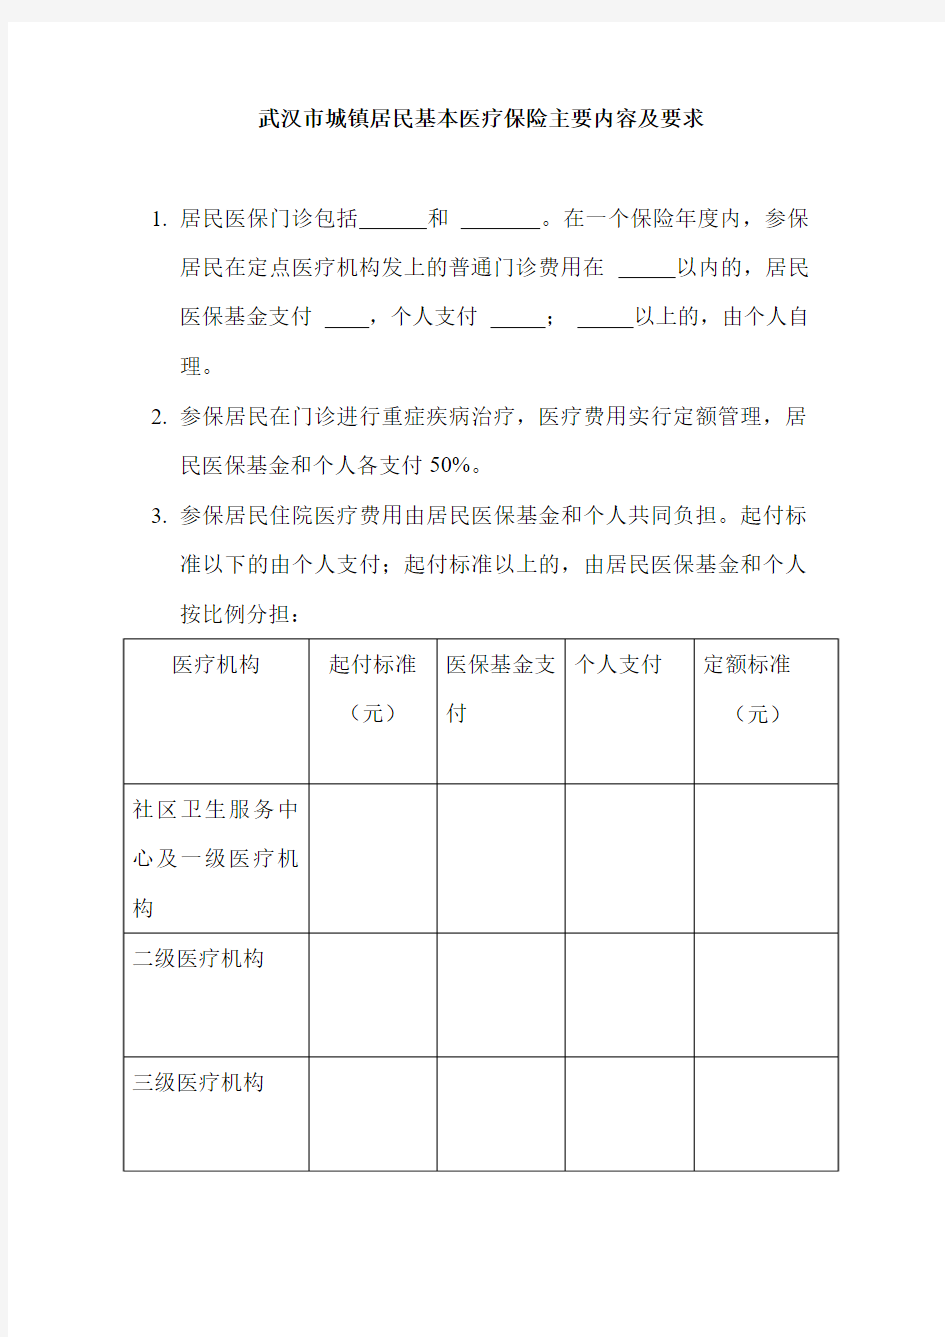 武汉市城镇居民基本医疗保险主要内容及要求